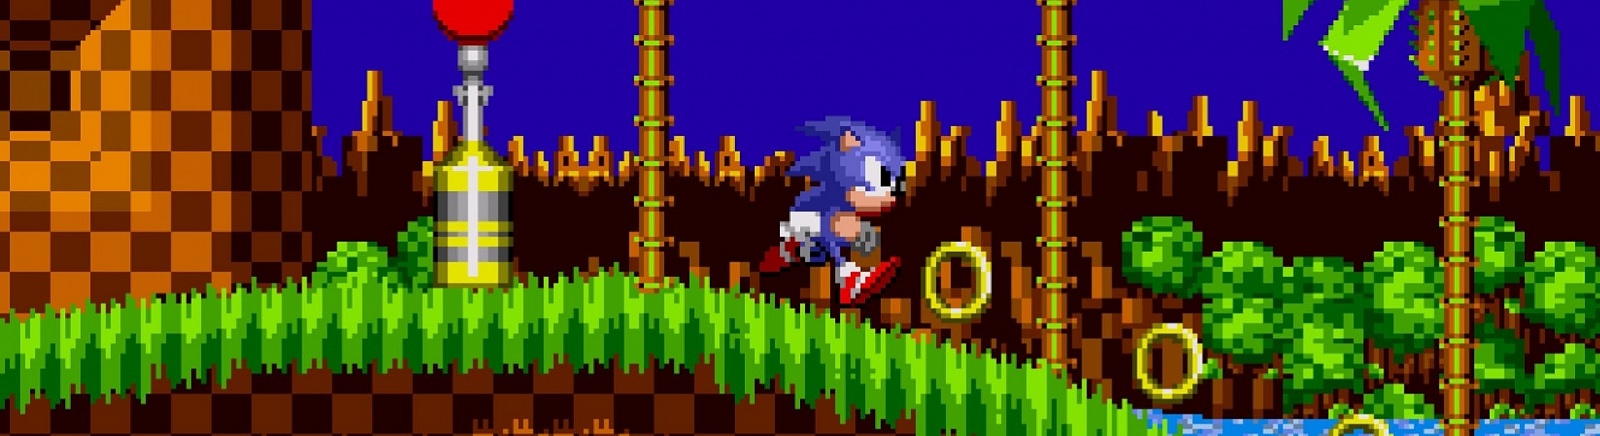 Дата выхода Sonic the Hedgehog (1991)  на iOS, Android и Wii в России и во всем мире